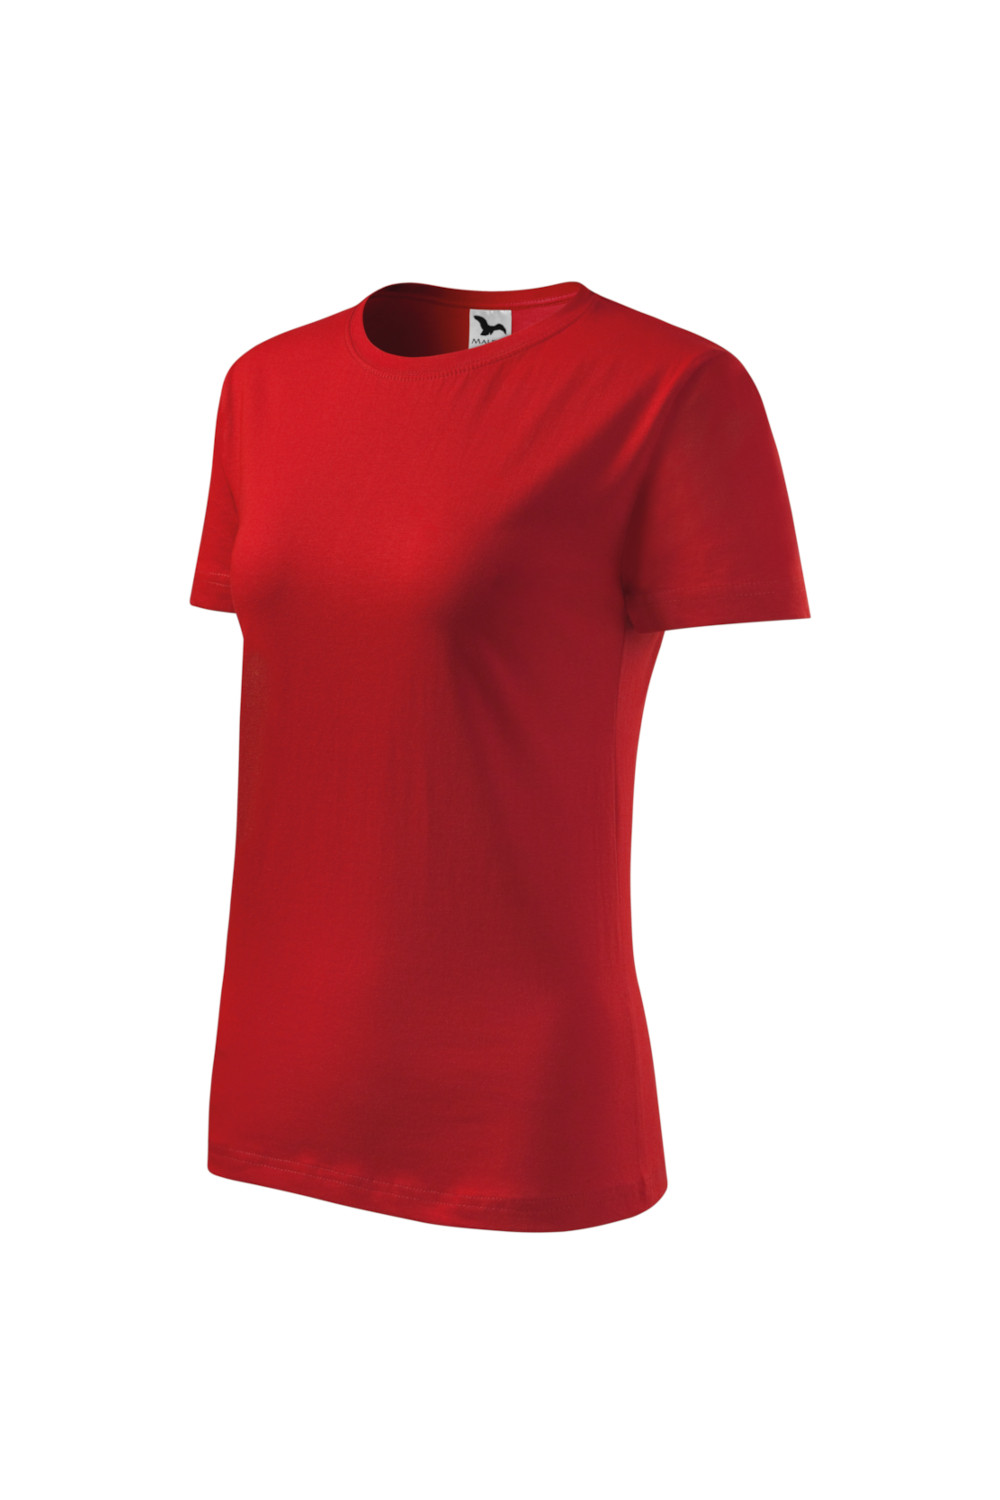 CLASSIC 133 MALFINI Koszulka damska 100% bawełna t-shirt czerwony